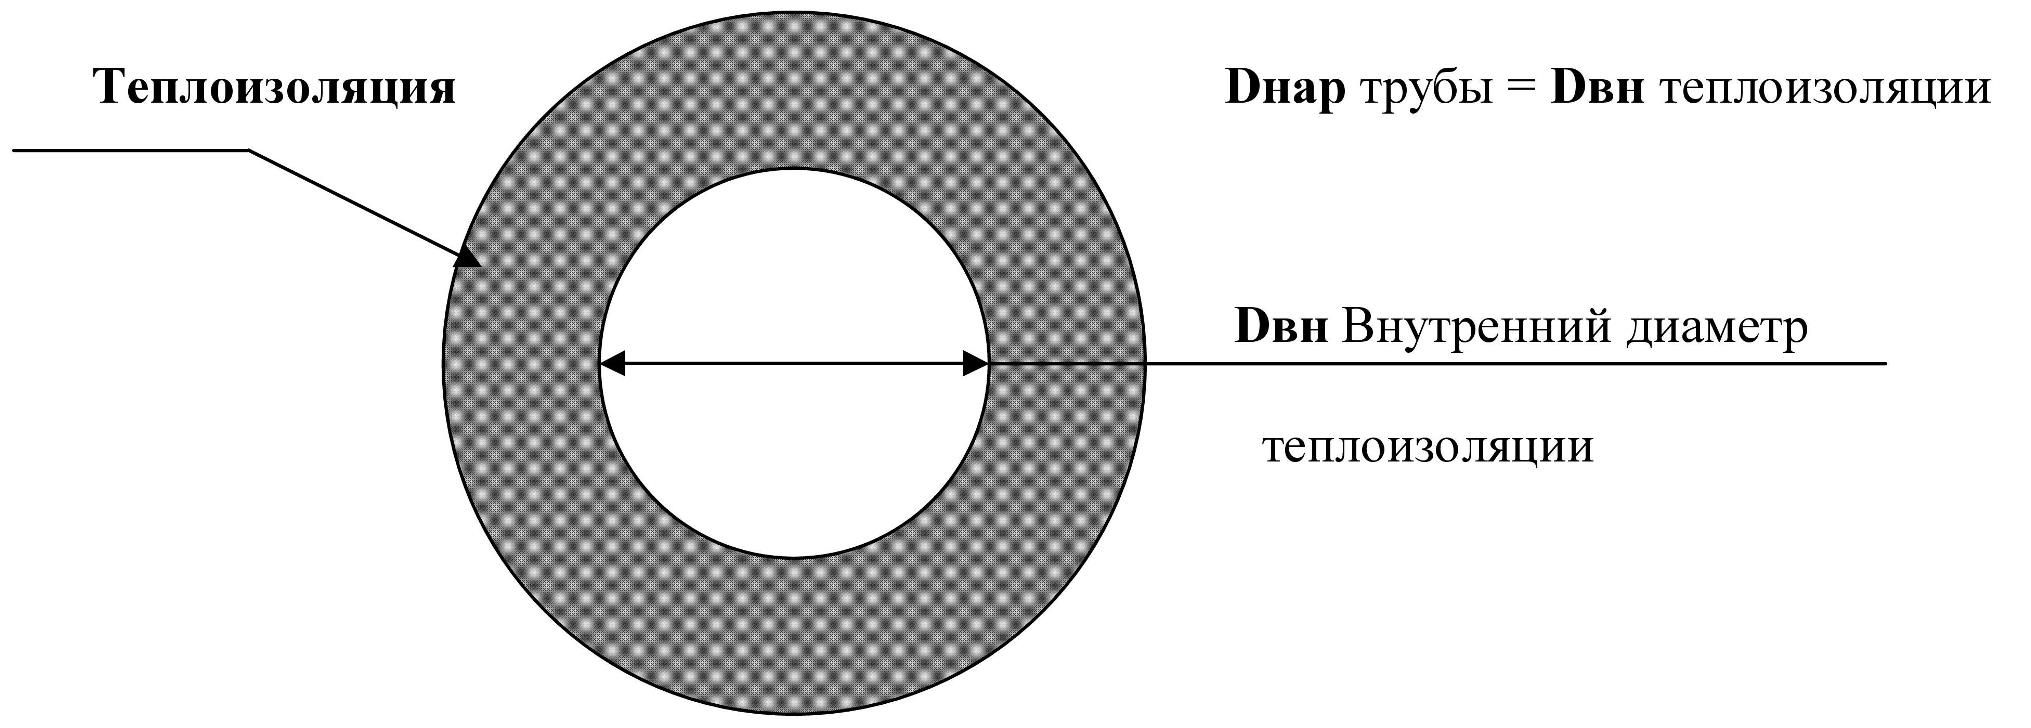 Как подобрать техническую изоляцию для труб в зависимости от диаметра